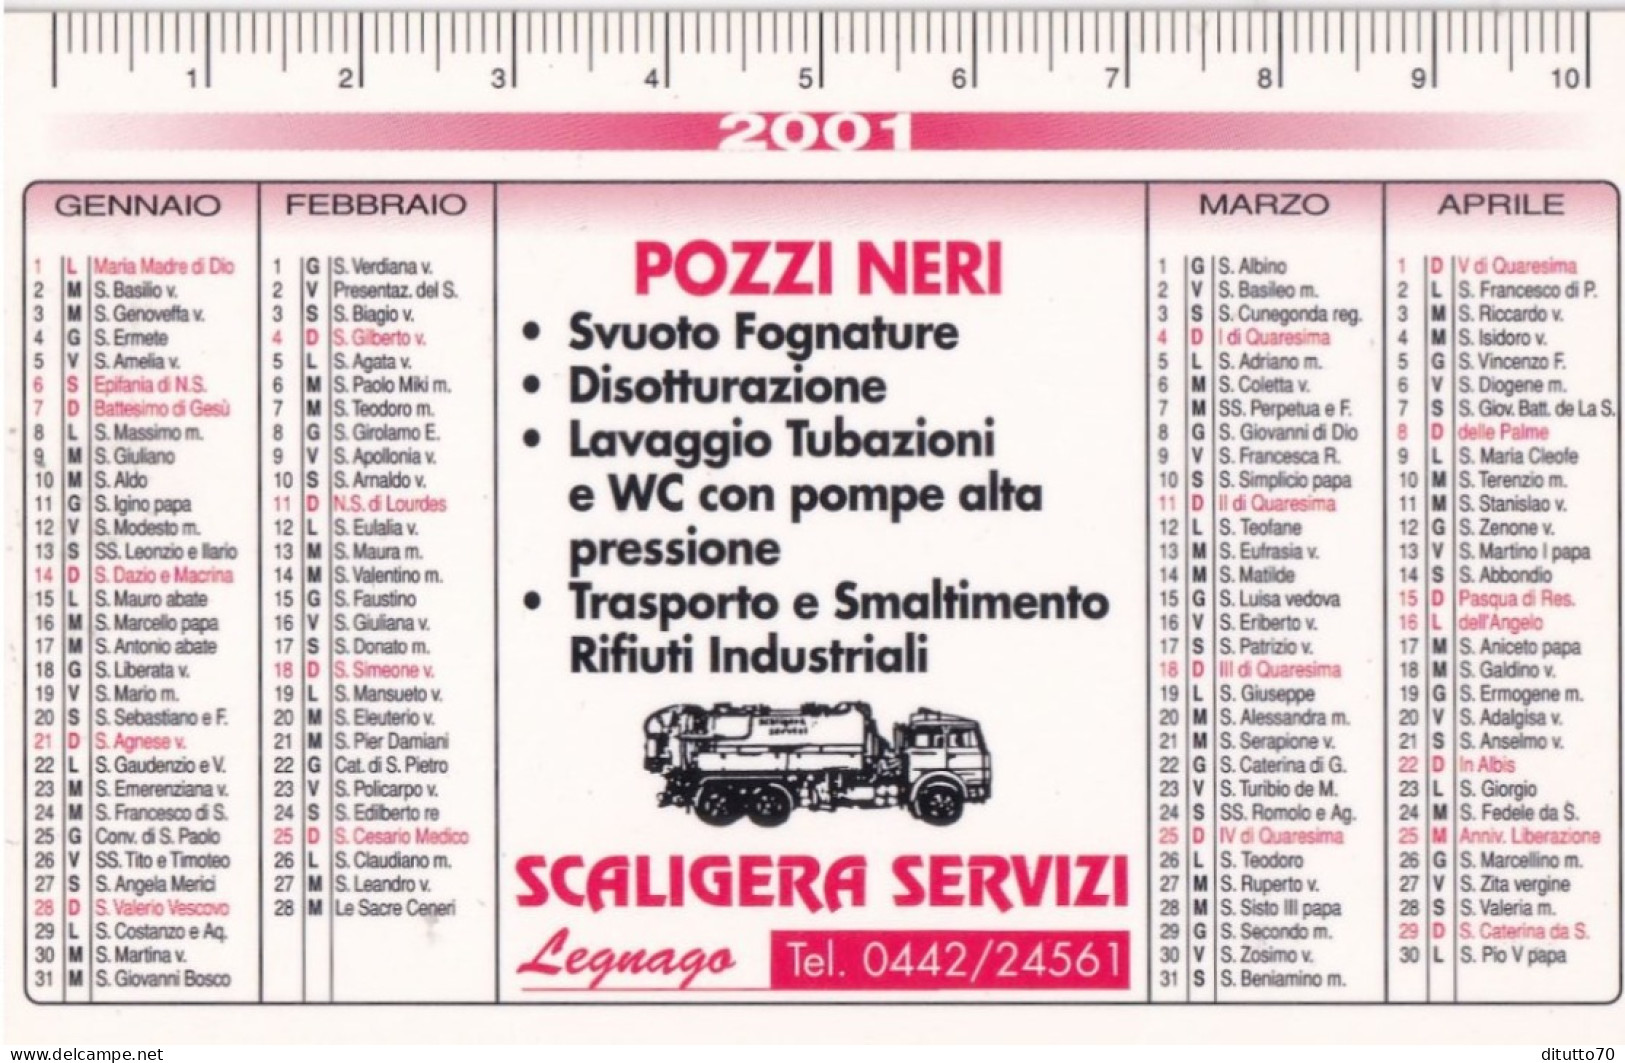 Calendarietto - Pozzi Neri - Scaligera Servizi - Legnago - Anno 2001 - Formato Piccolo : 2001-...